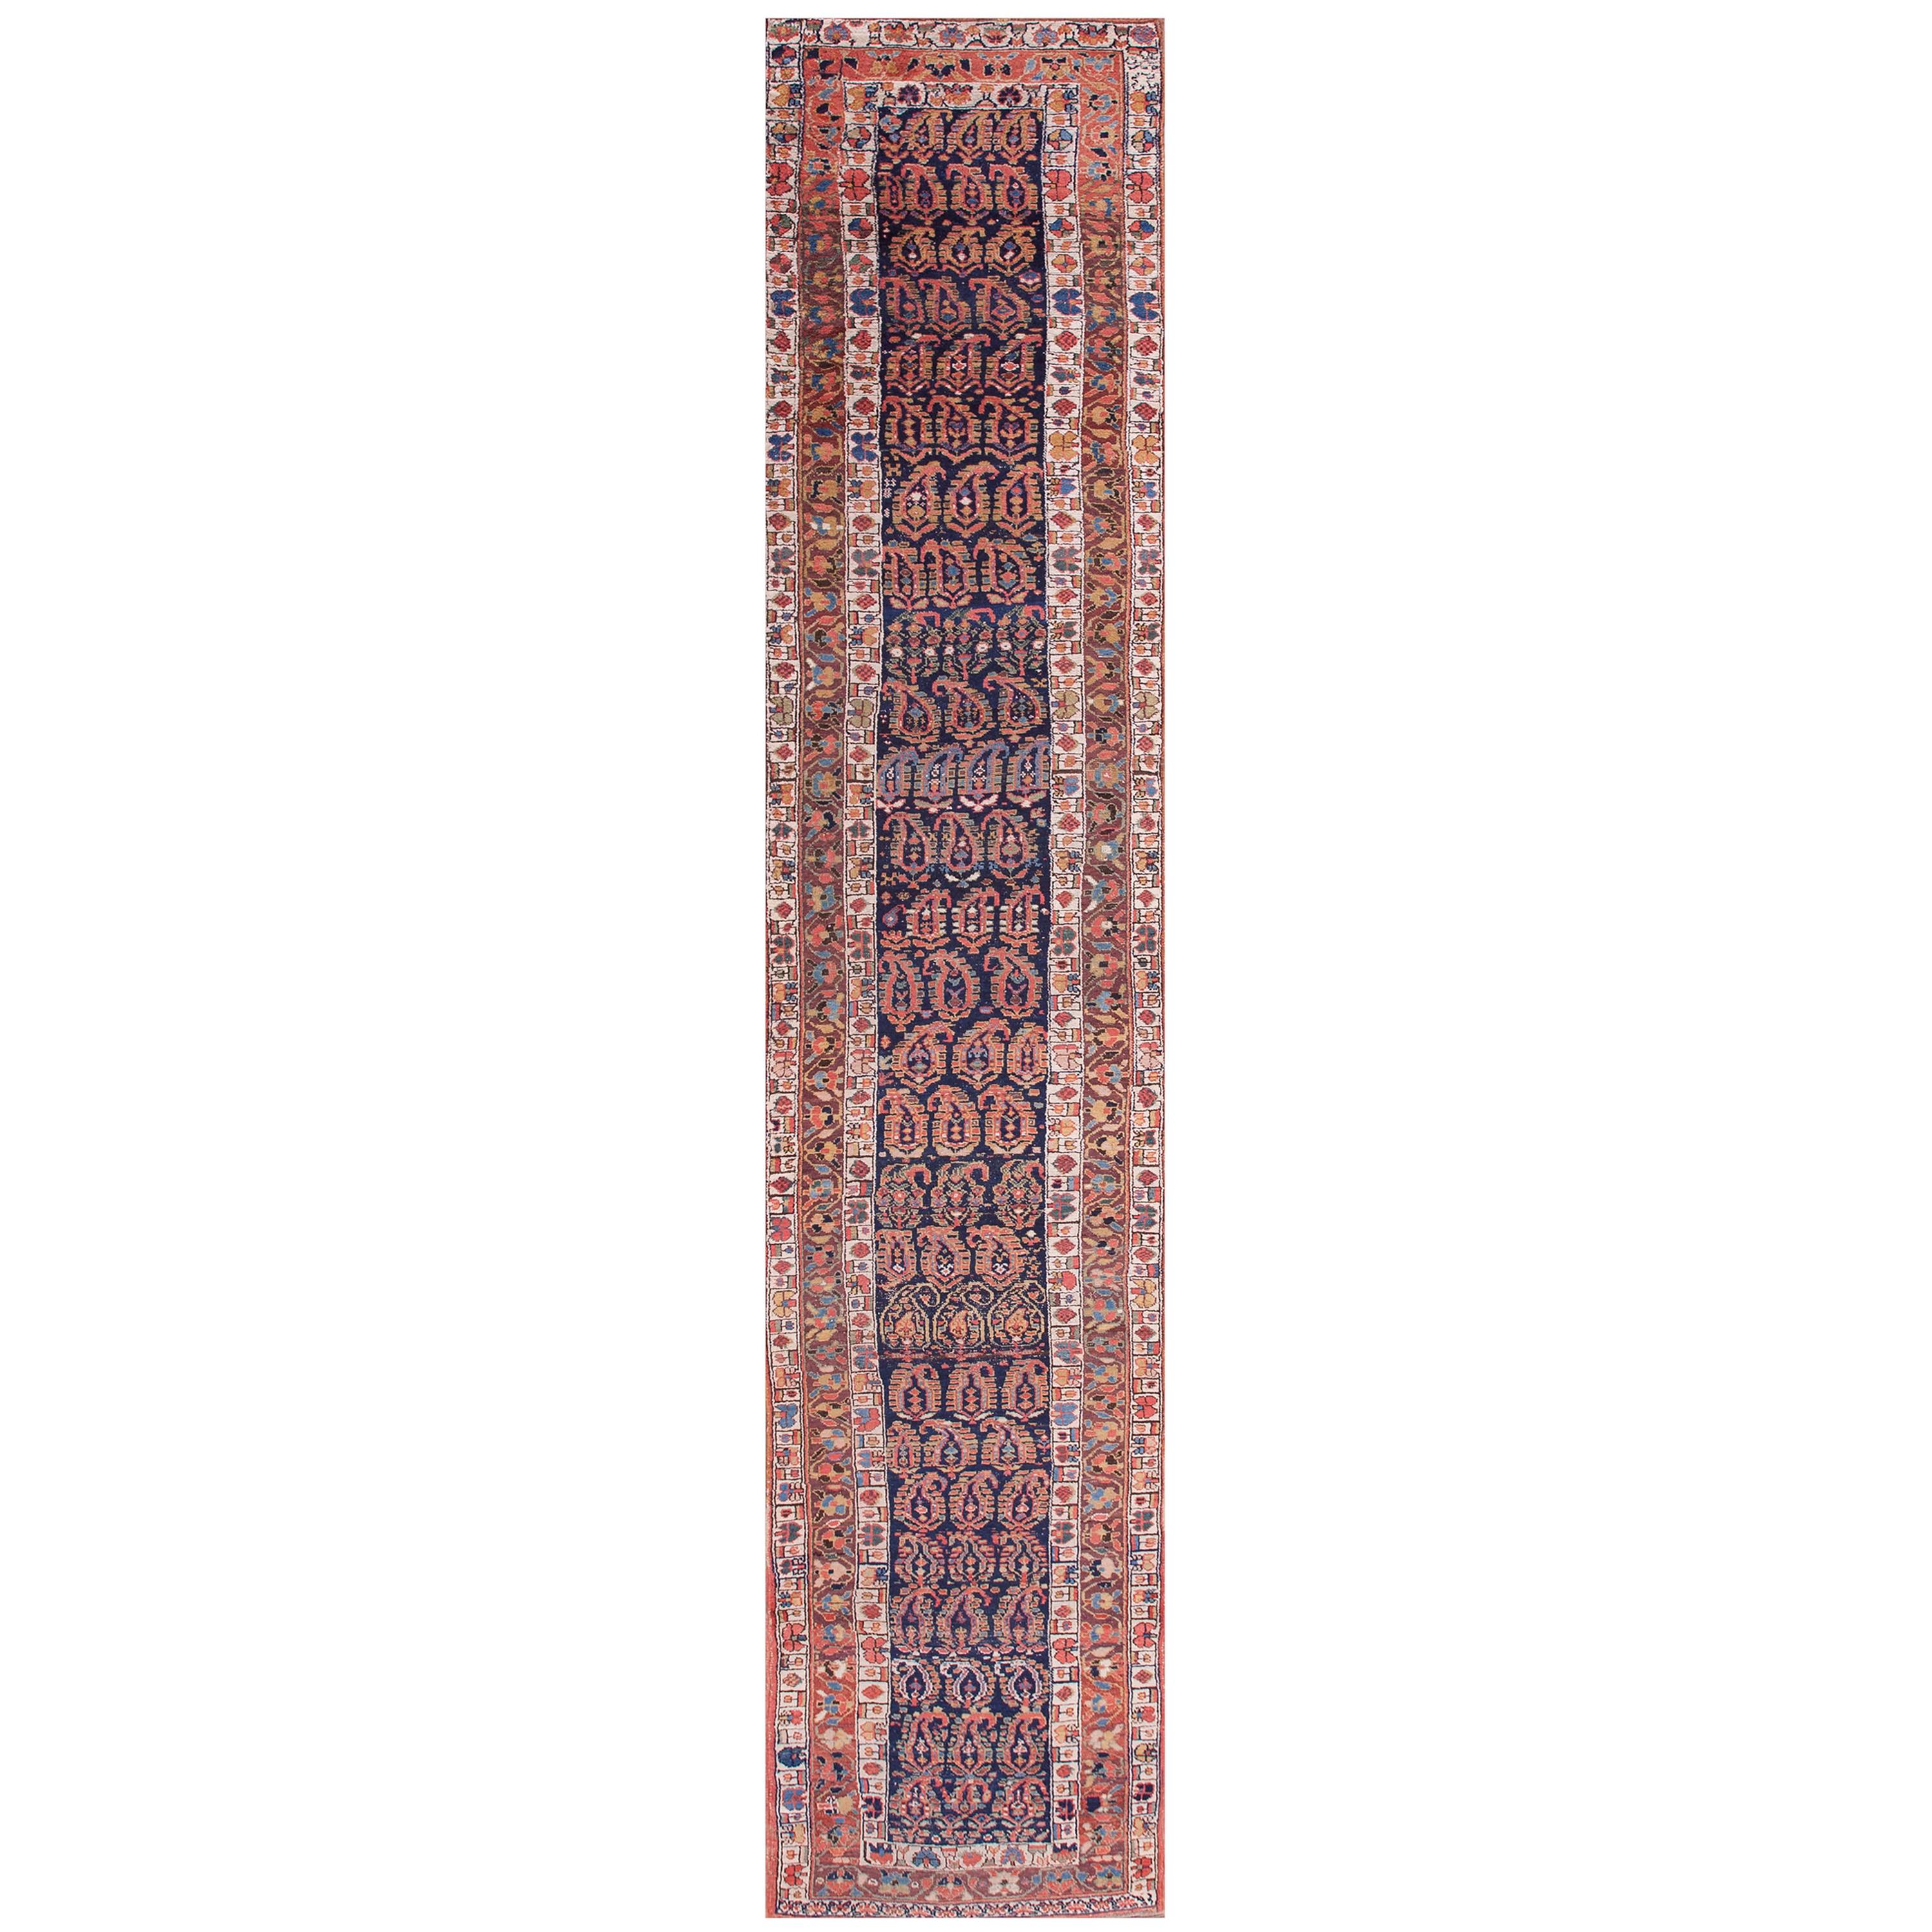 Persischer Kurdischer Teppich des späten 19. Jahrhunderts ( 3'7" x 17'3" - 109 x 526)